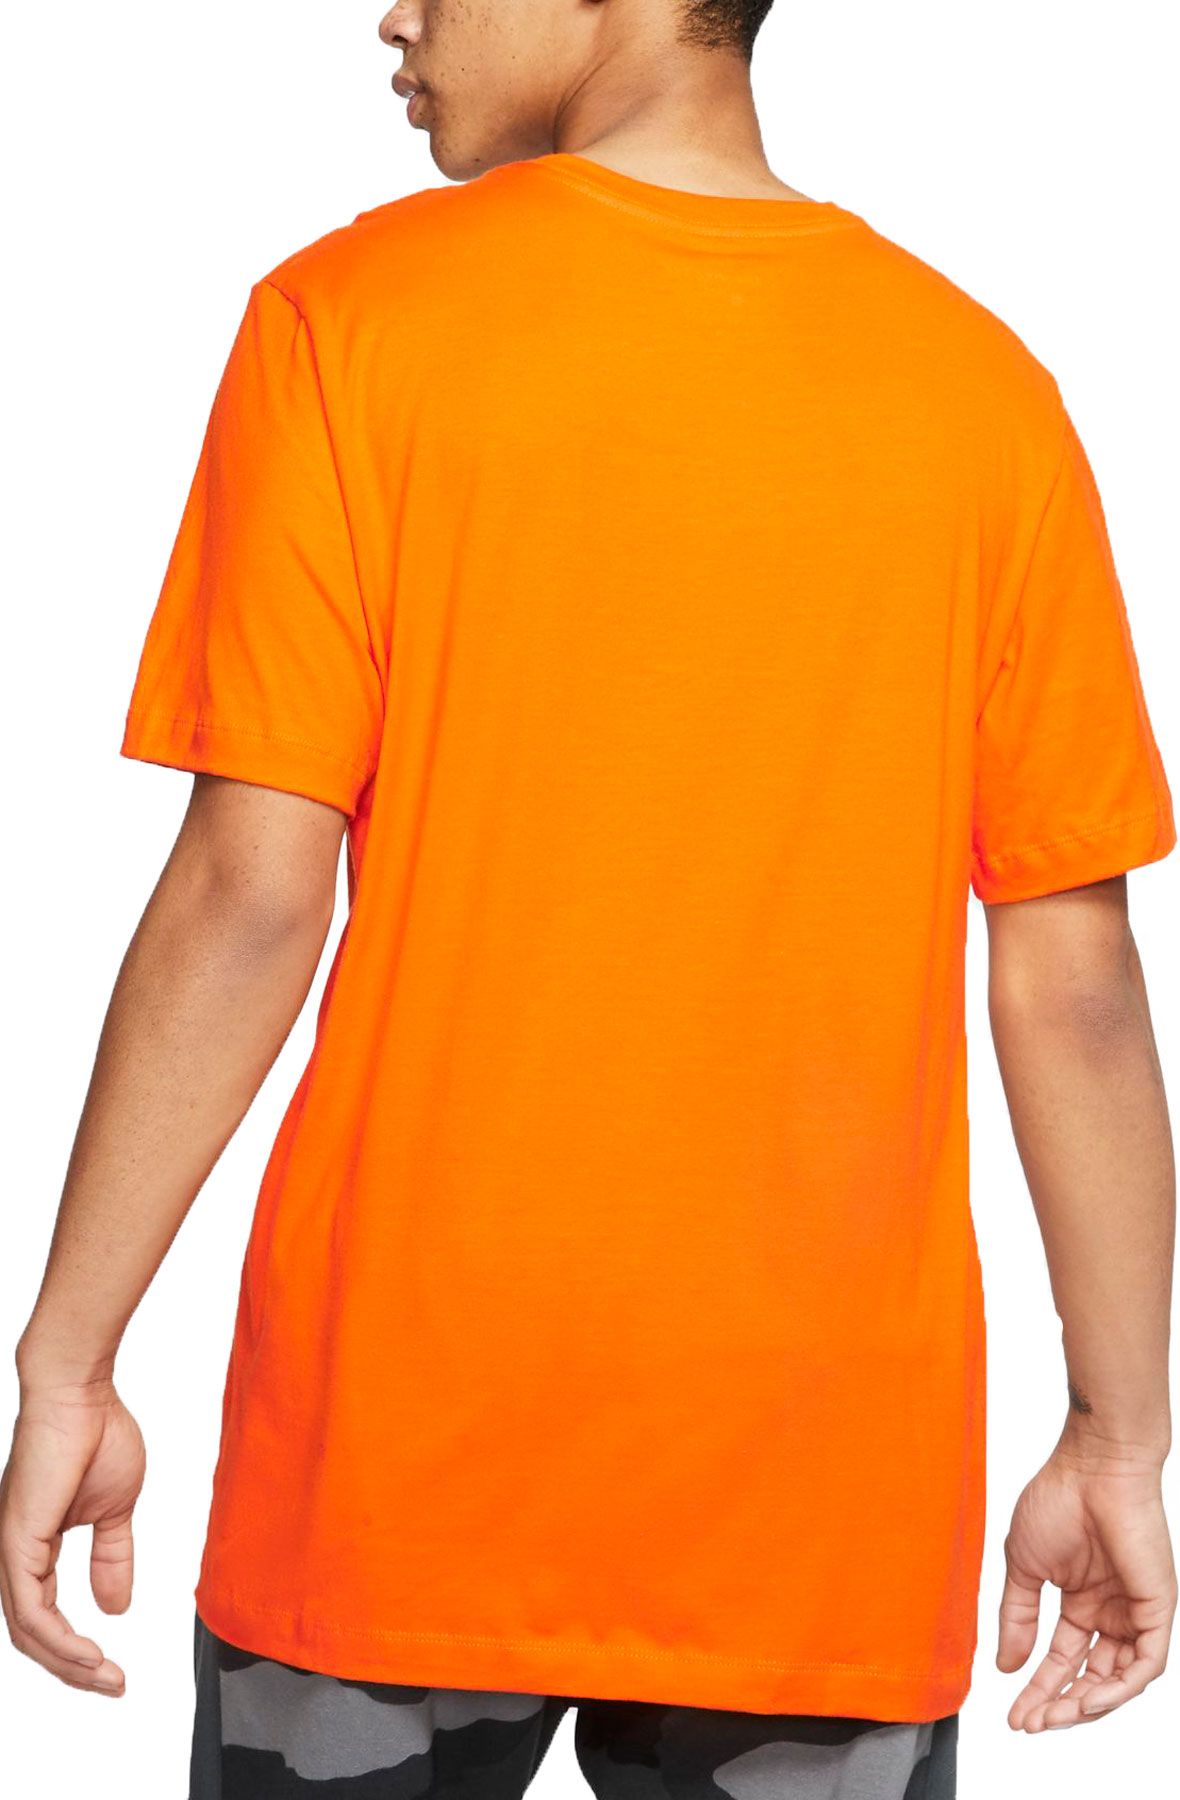 magma orange nike shirt